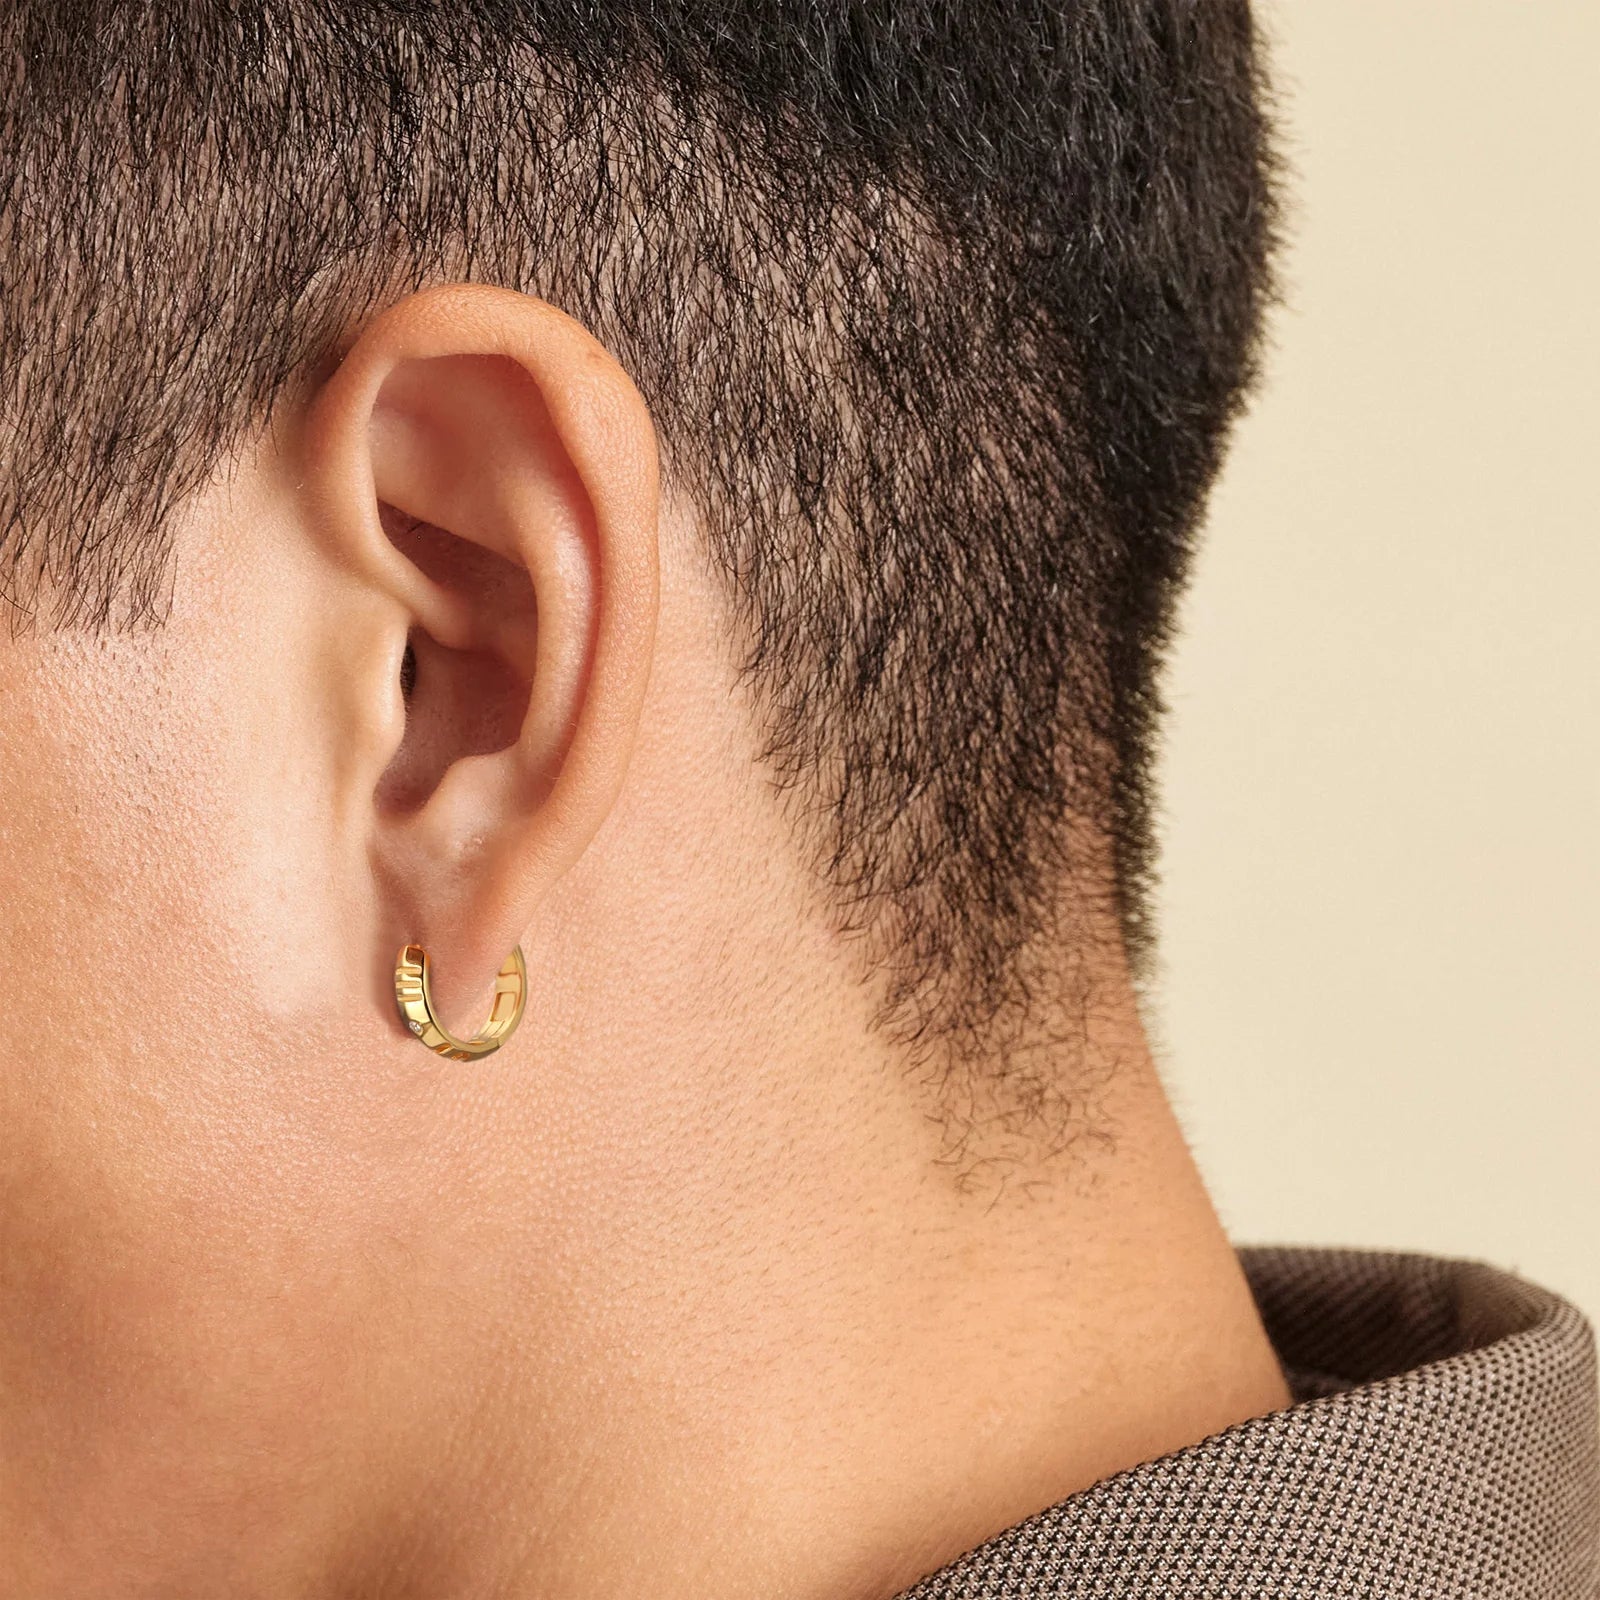 S925 Silver Roman Numerals Hoop Earrings for Men in 14K Gold - 15mm 